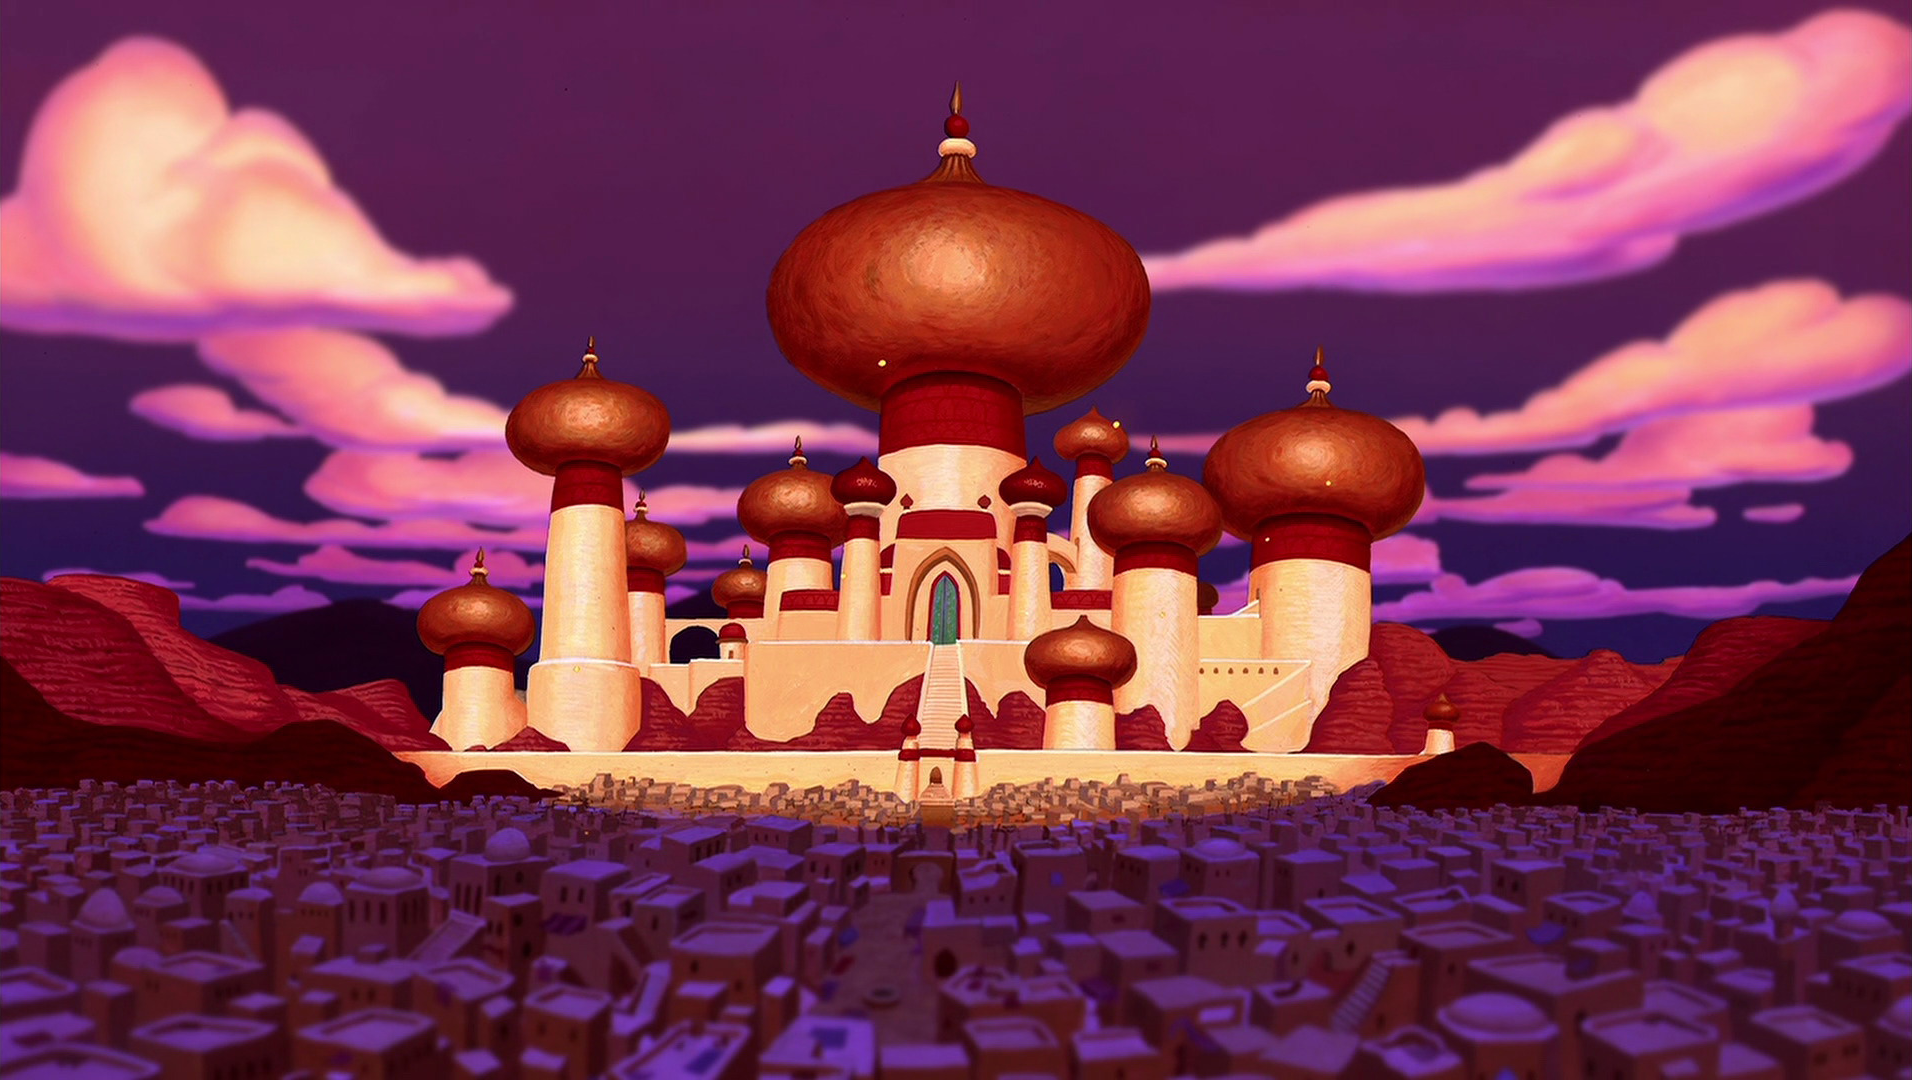 Jafar - Dreamlight Valley Wiki